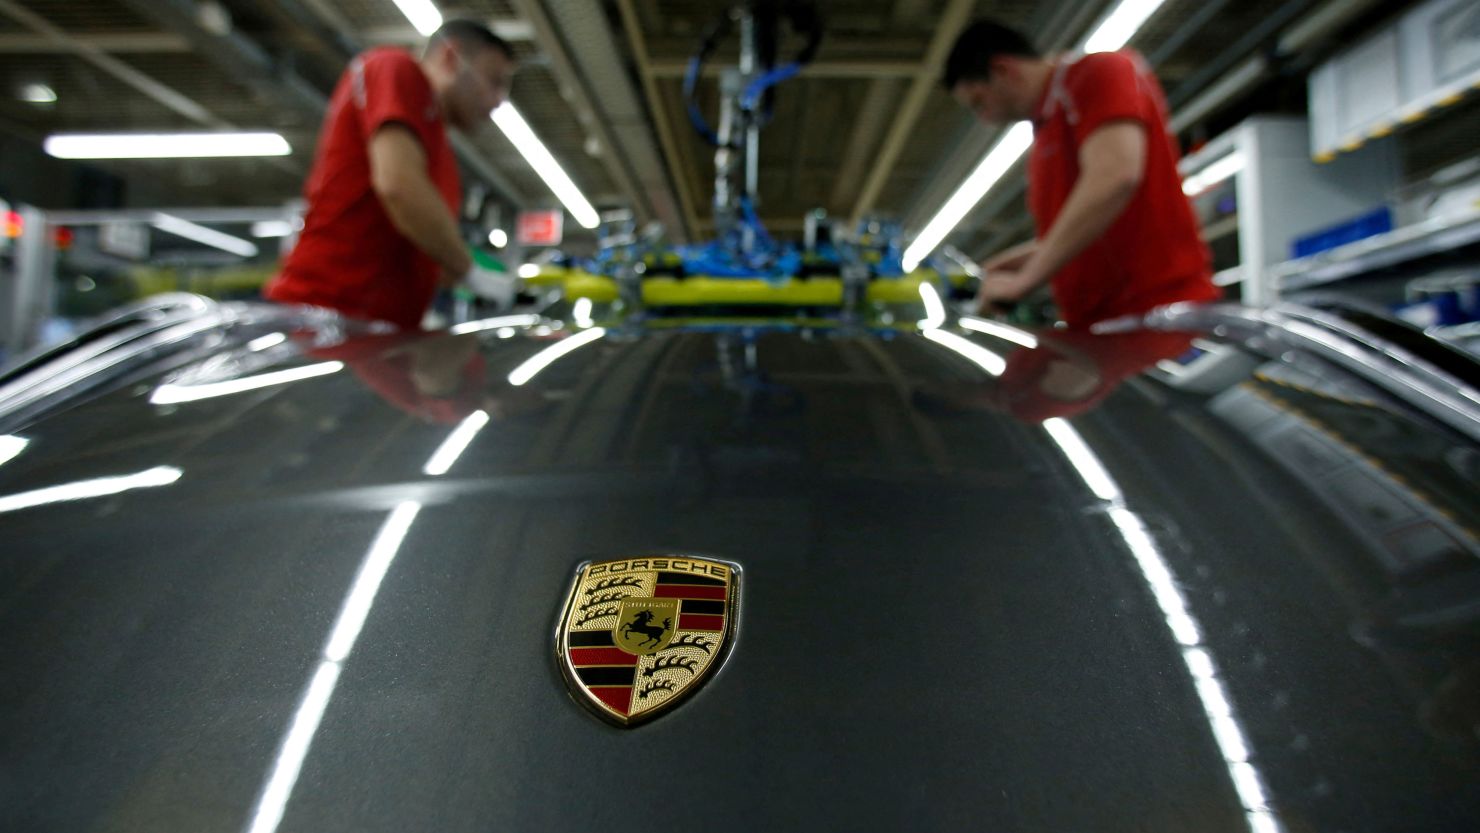  Employees of German car manufacturer Porsche install the windshield of a Porsche 911 at the Porsche factory in Stuttgart-Zuffenhausen, Germany, February 19, 2019.